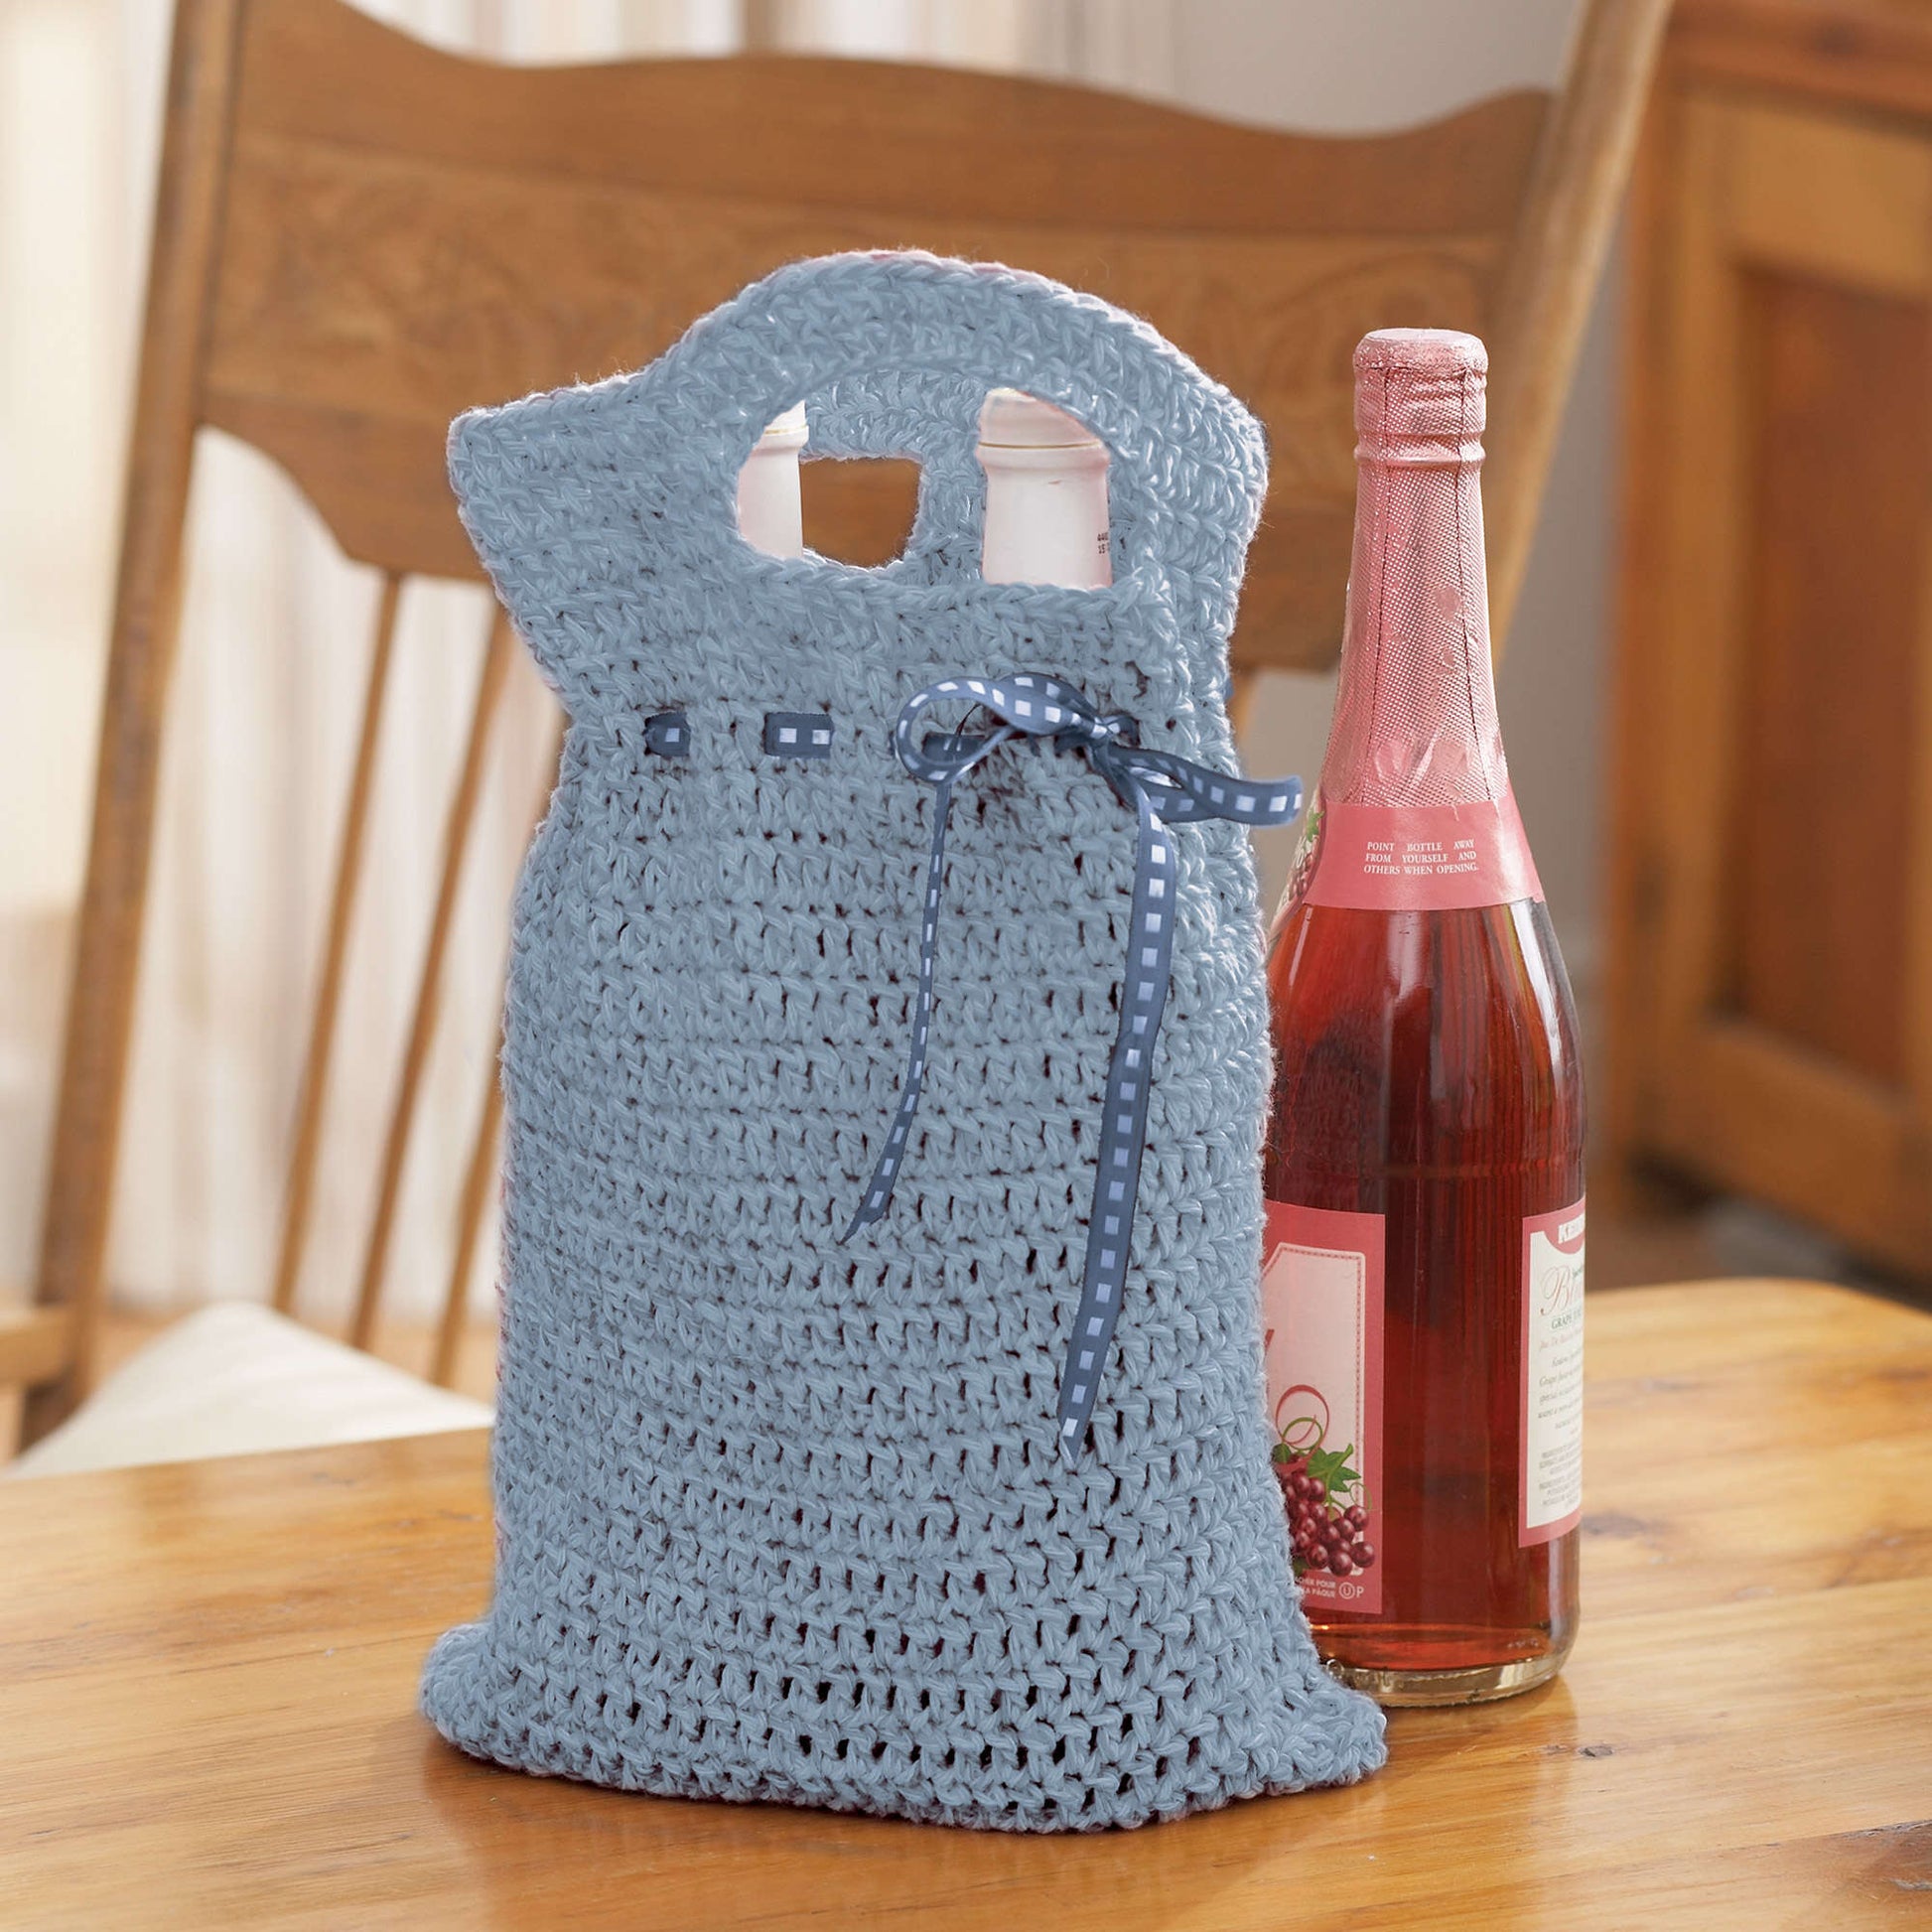 Bernat Reusable Gift Bag Crochet Bag made in Bernat Handicrafter Cotton yarn